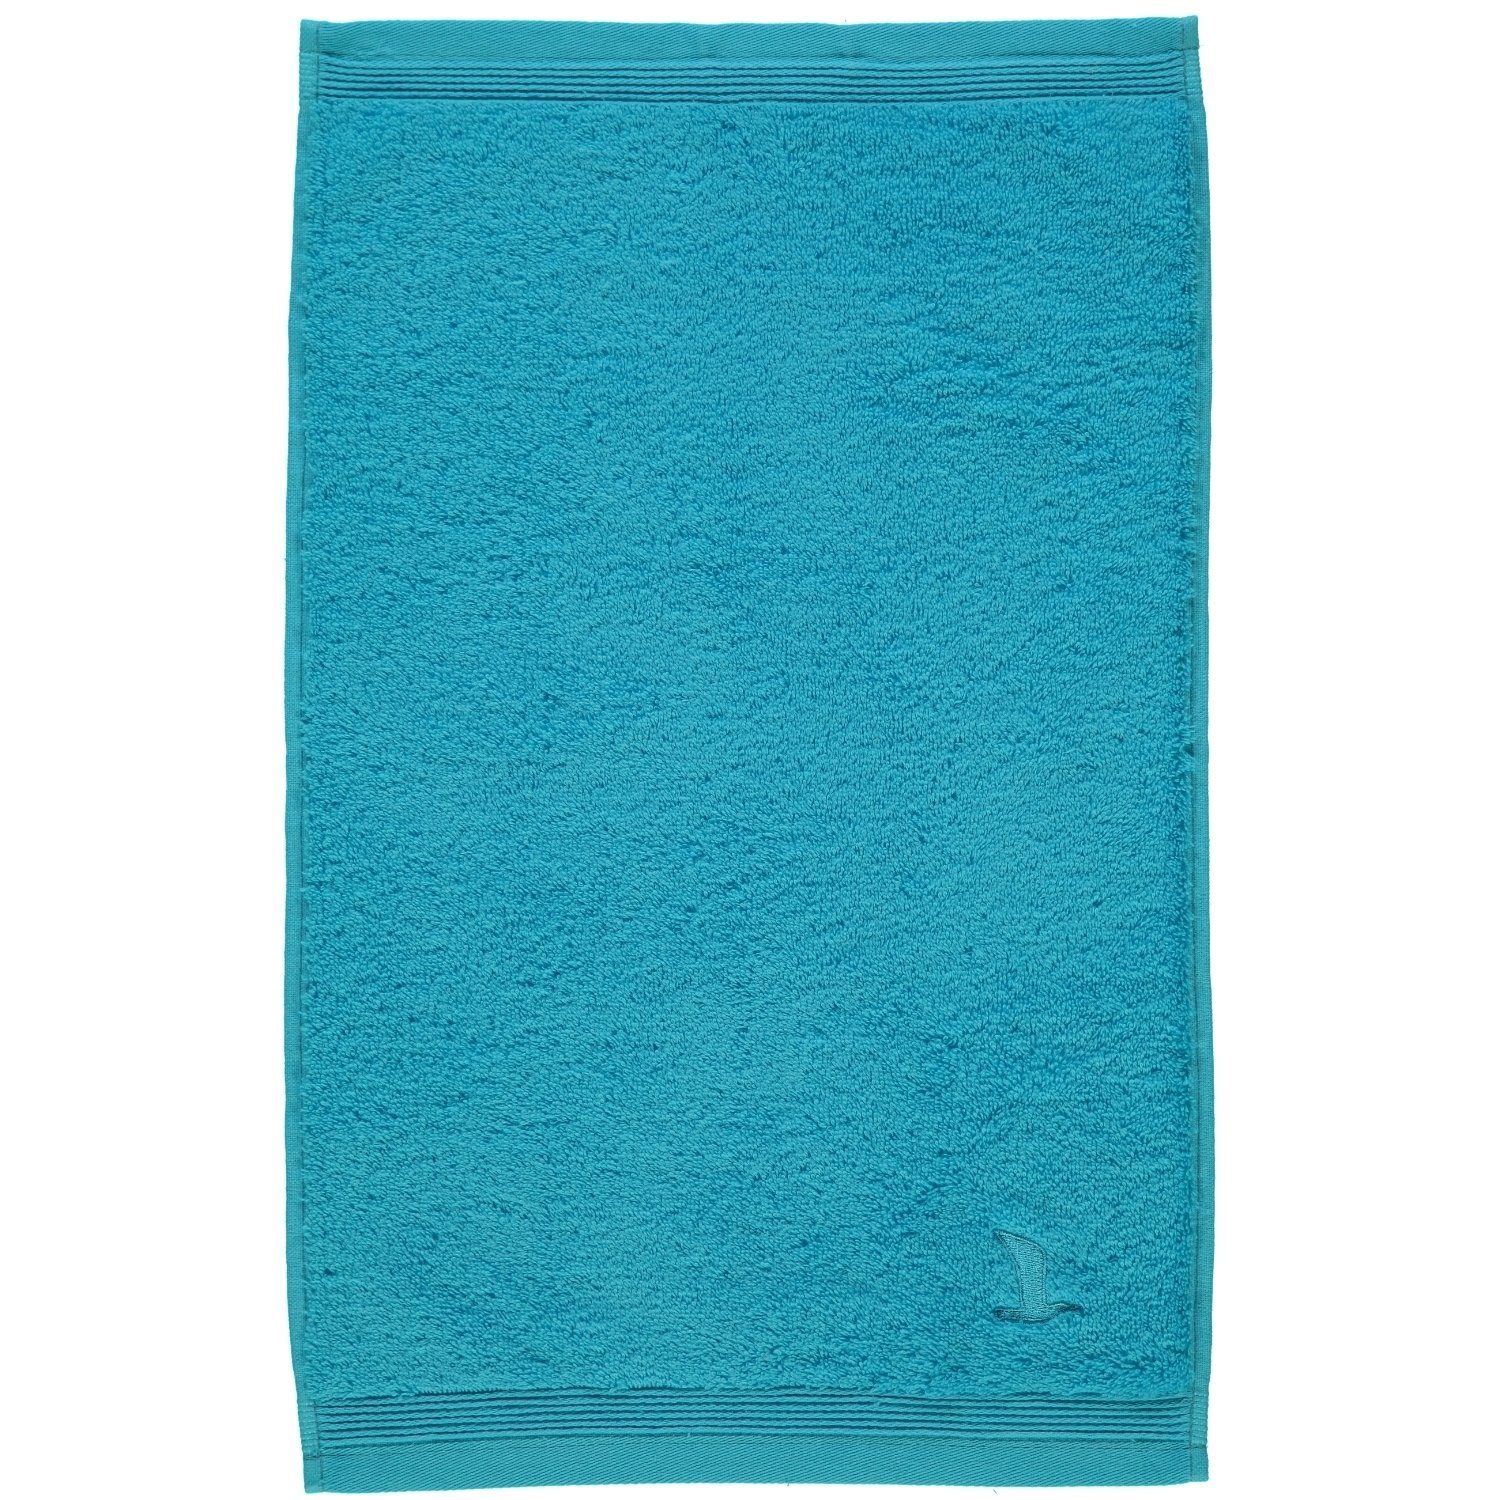 Baumwolle Möve - Handtücher turquoise 194 100% Superwuschel,